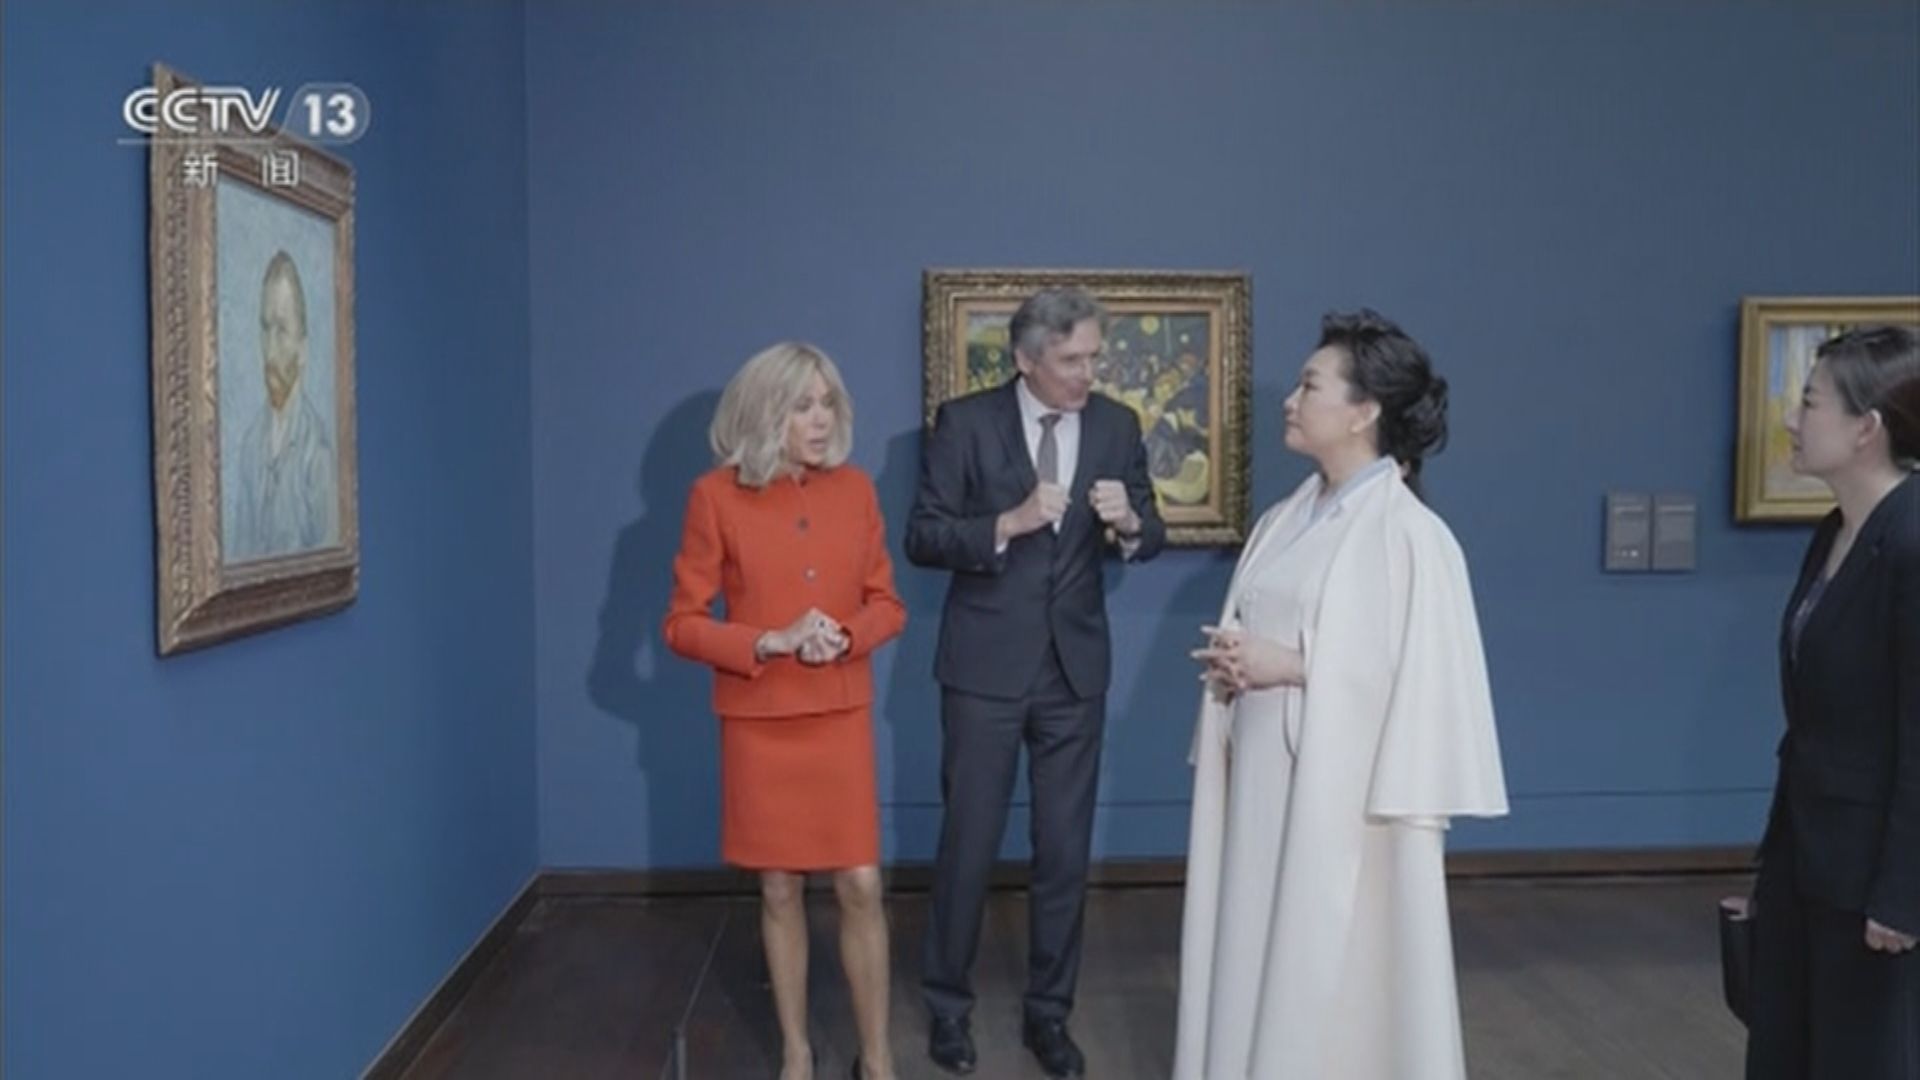 中法元首夫人參觀奧賽博物館 彭麗媛盼兩國開展更多藝術交流